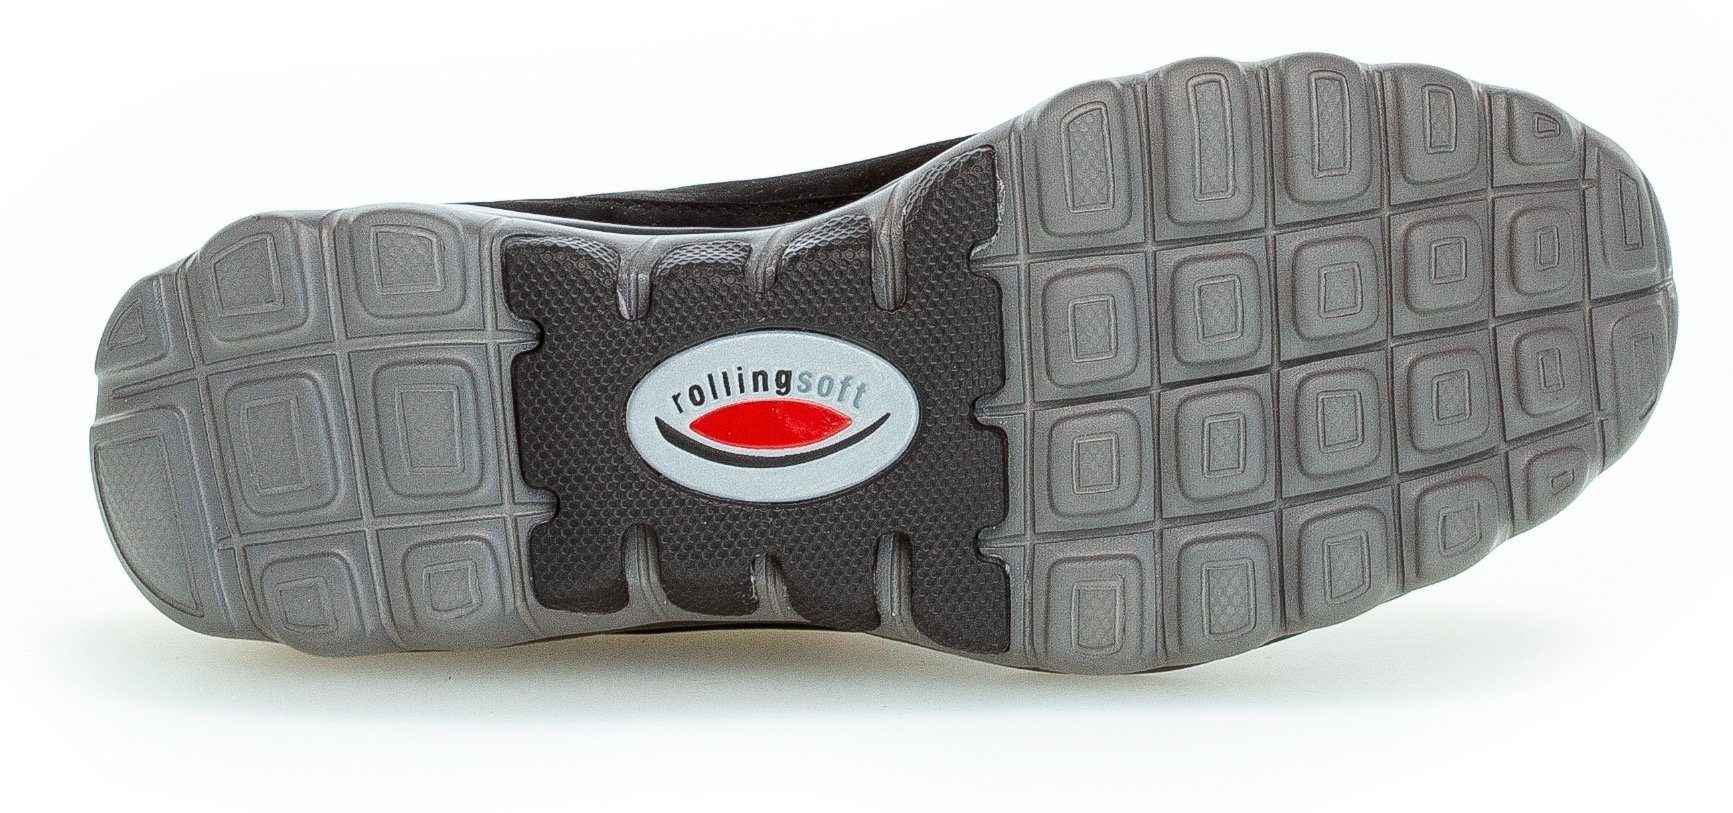 schwarz der Ferse Gabor Rollingsoft mit an Logoschriftzug Keilsneaker